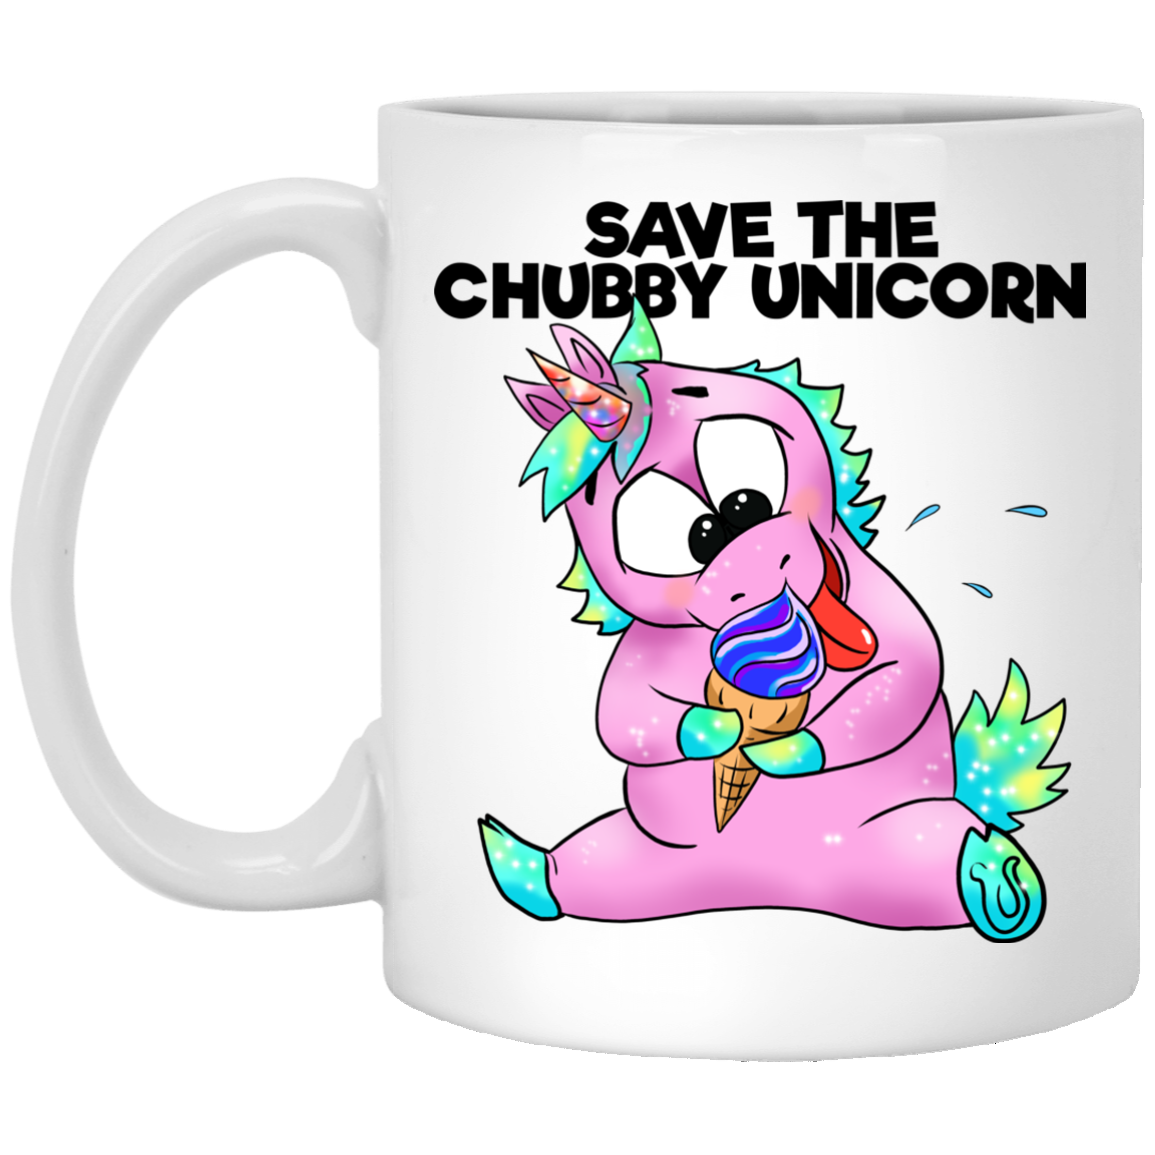 Unicorn Gifts - Funny Unicorn Mug, Save The Chubby Unicorns, Cartoon unicorns - GoneBold.gift